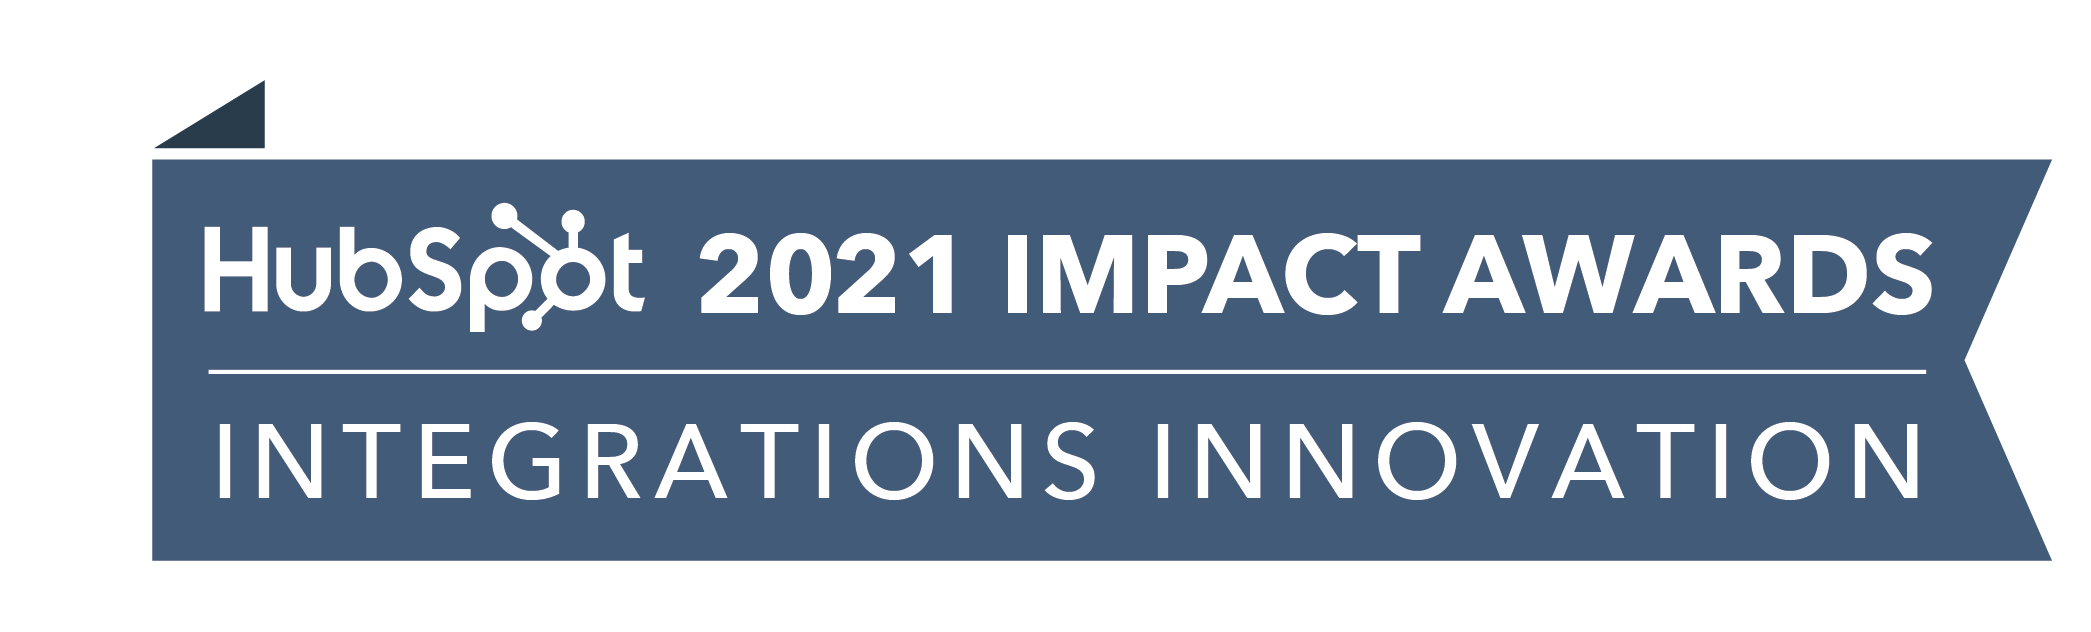 HubSpot_ImpactAwards_2021_IntegrationsInnov2-1